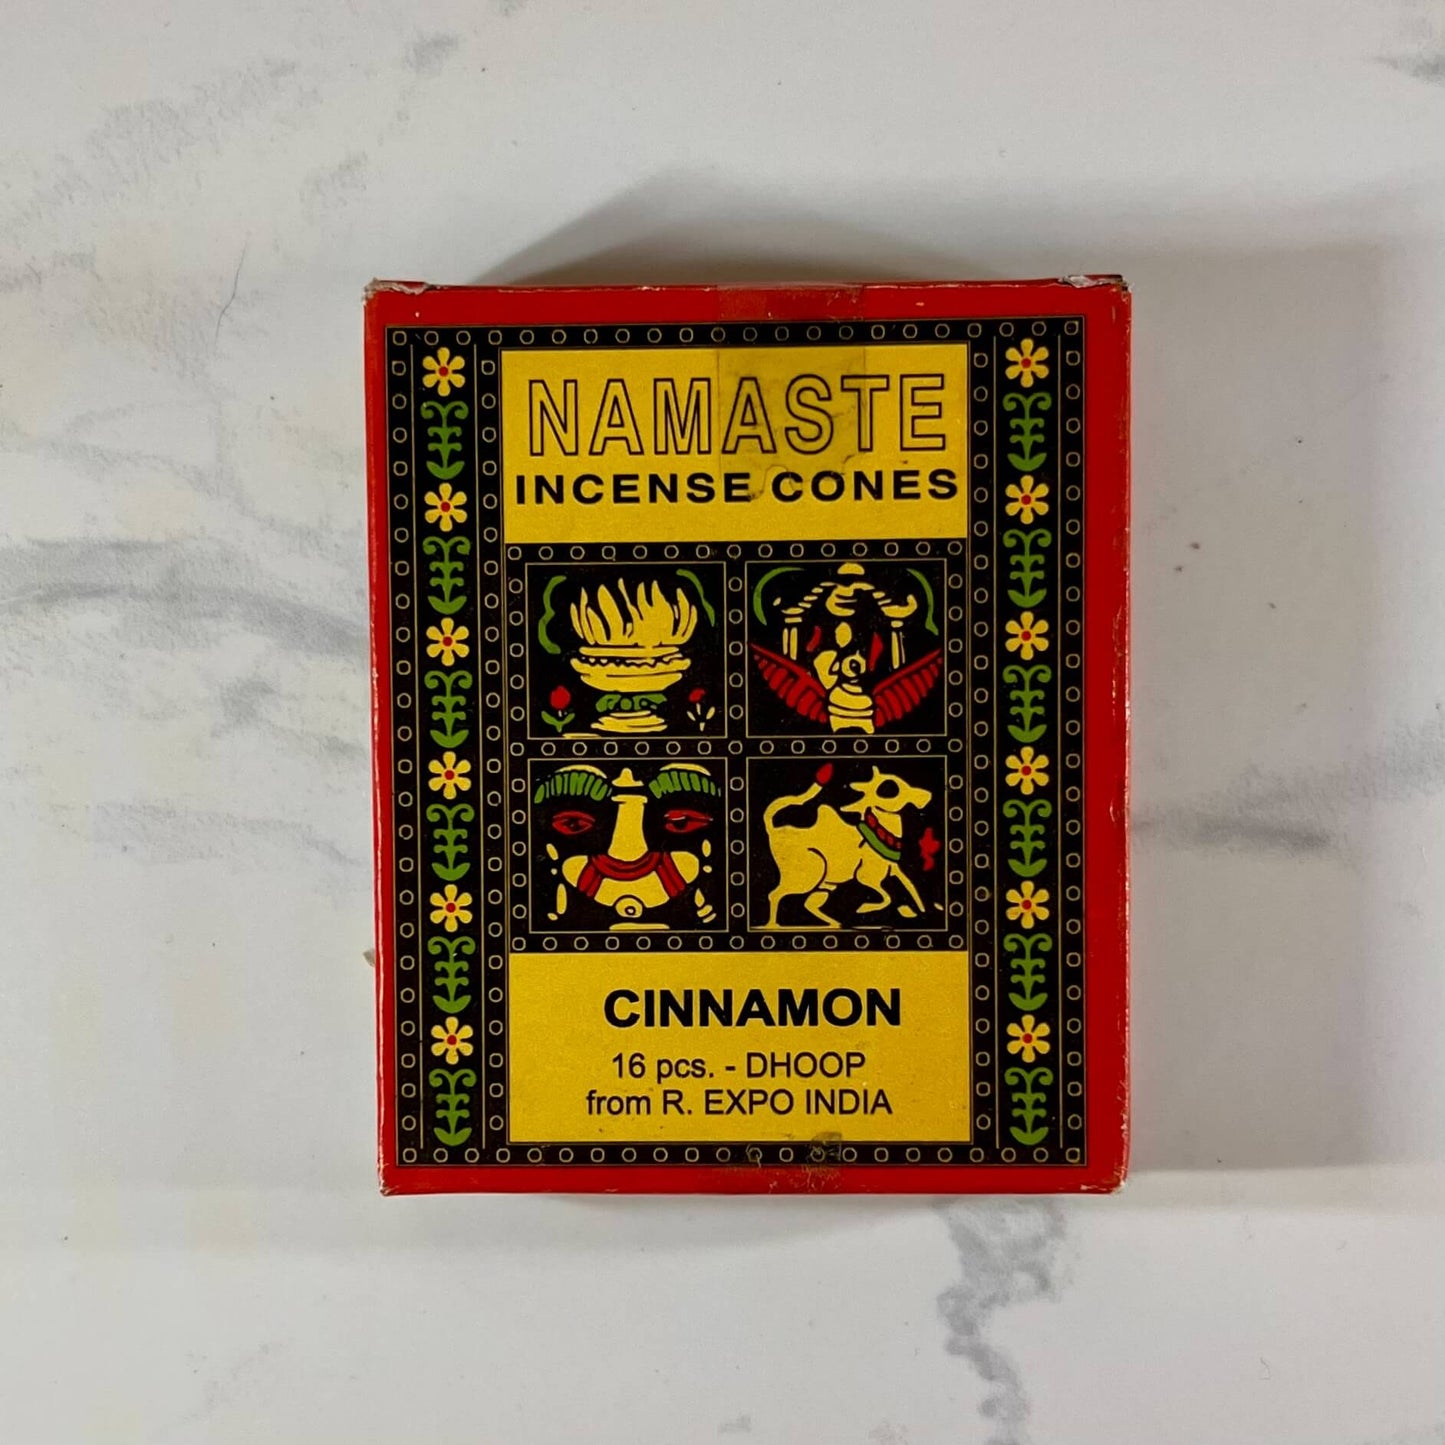 Namaste Cinnamon incense cones